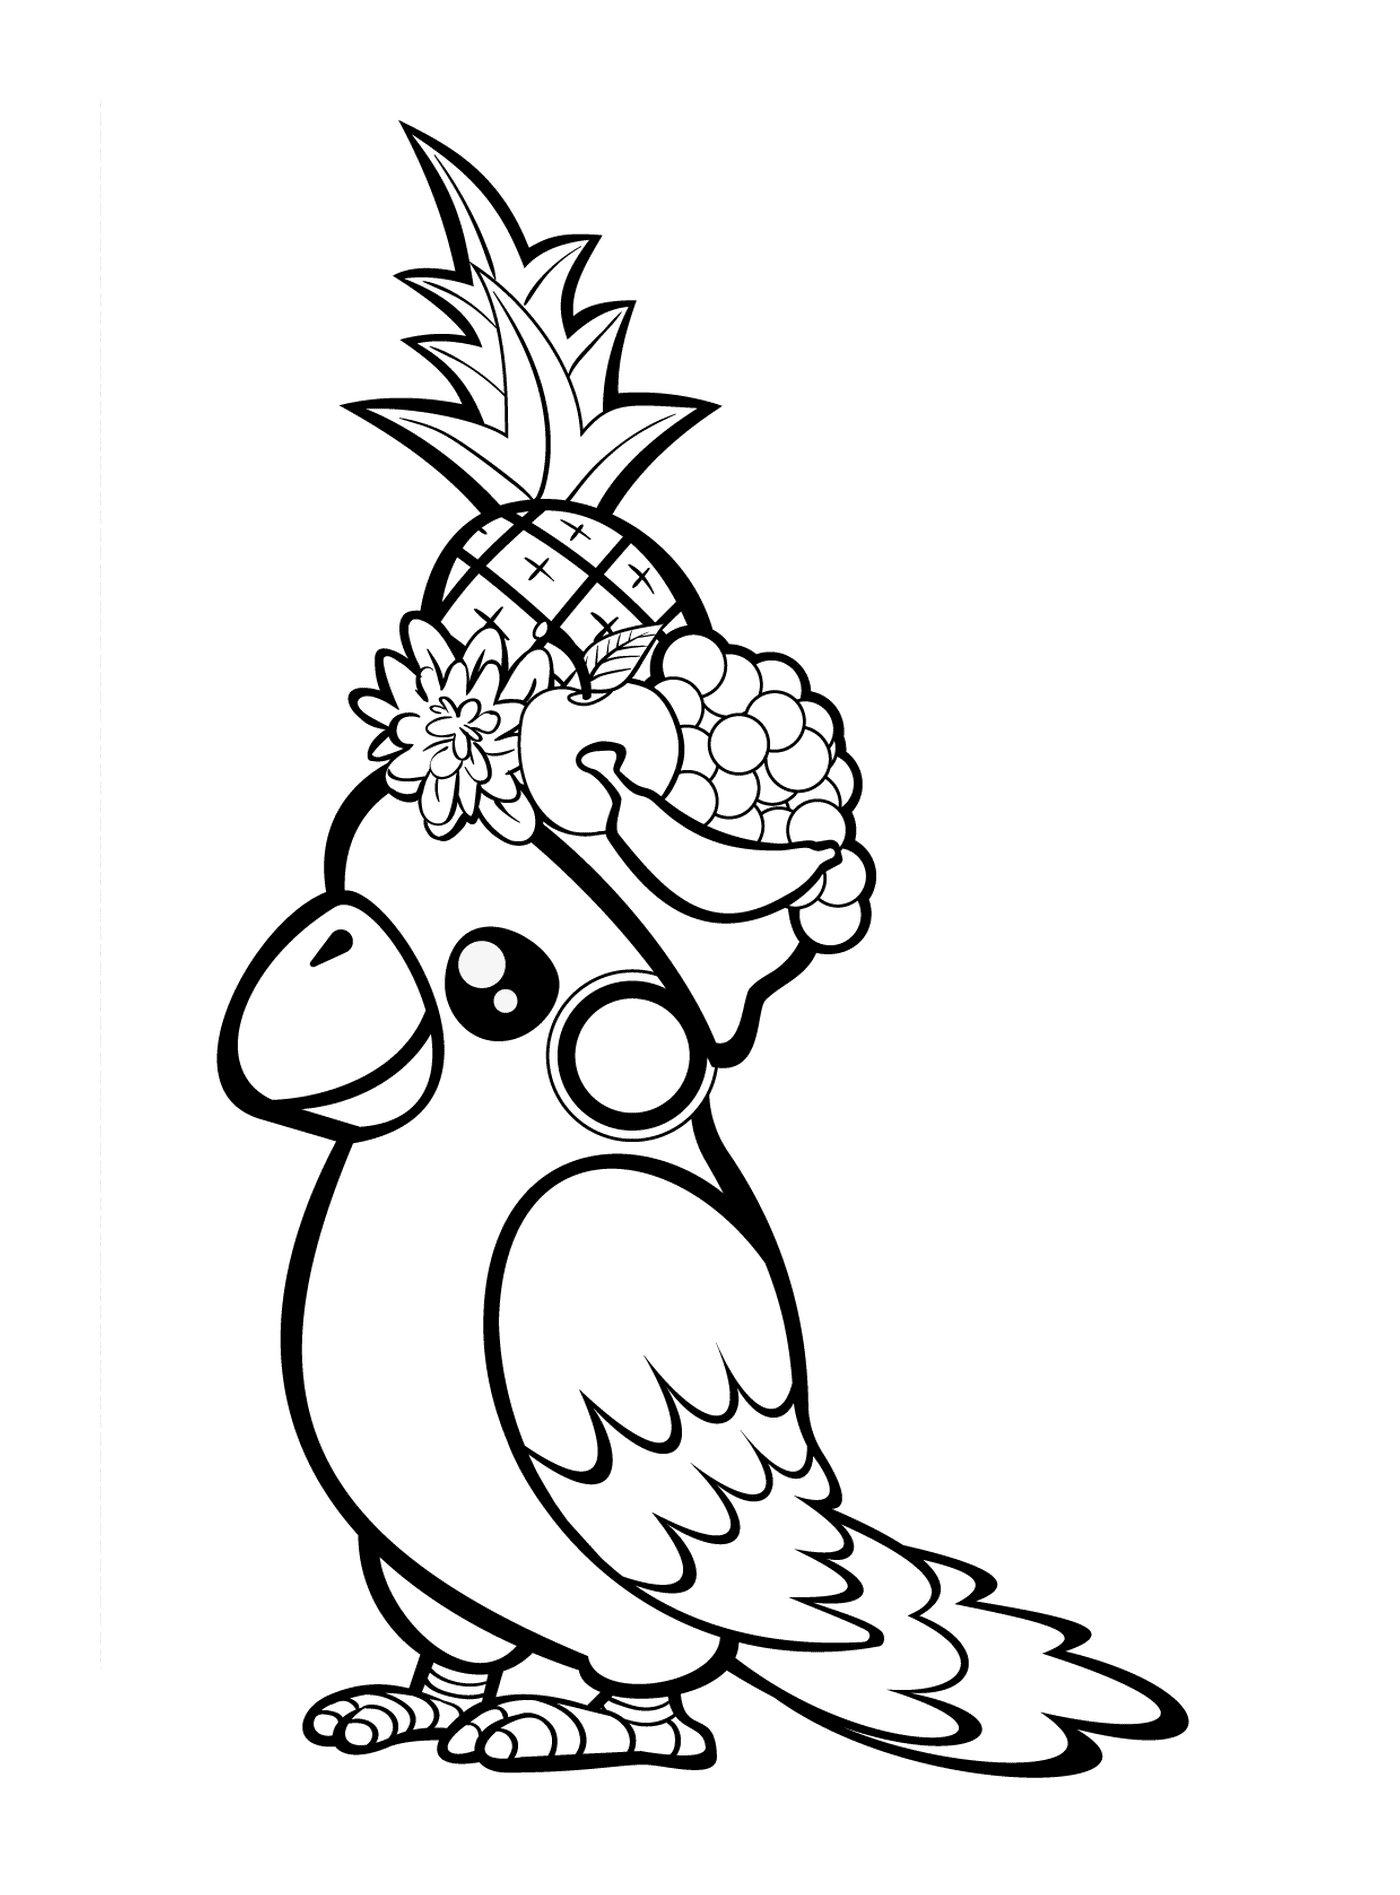  一只持有菠萝的鹦鹉 